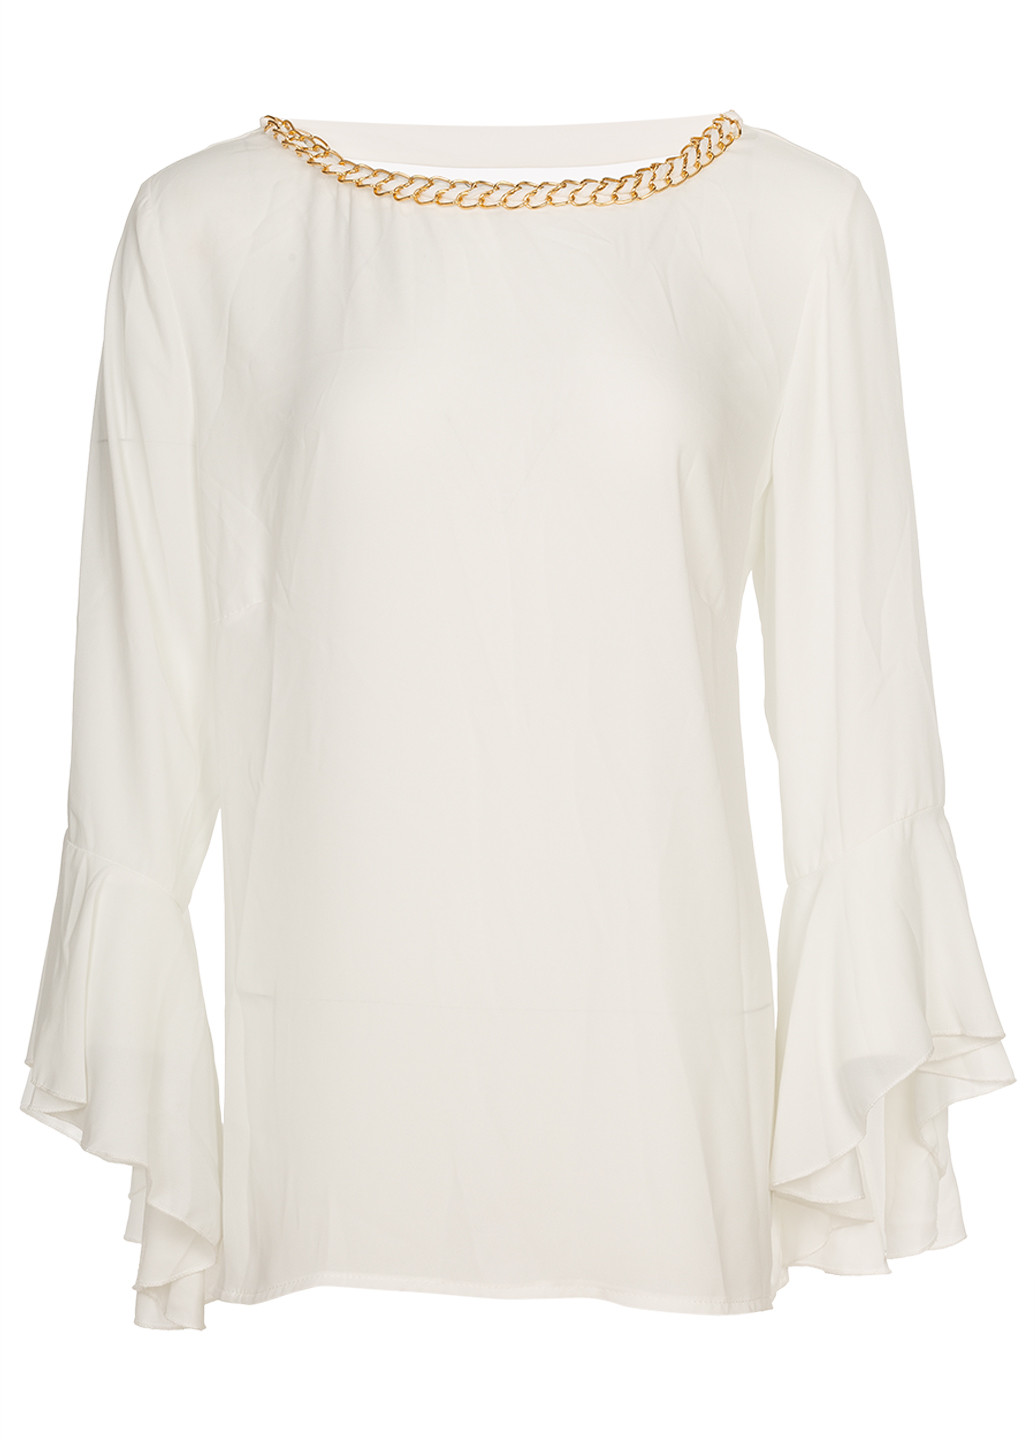 Біла шифонова жіноча блузка з довгими рукавами. Rinascimento